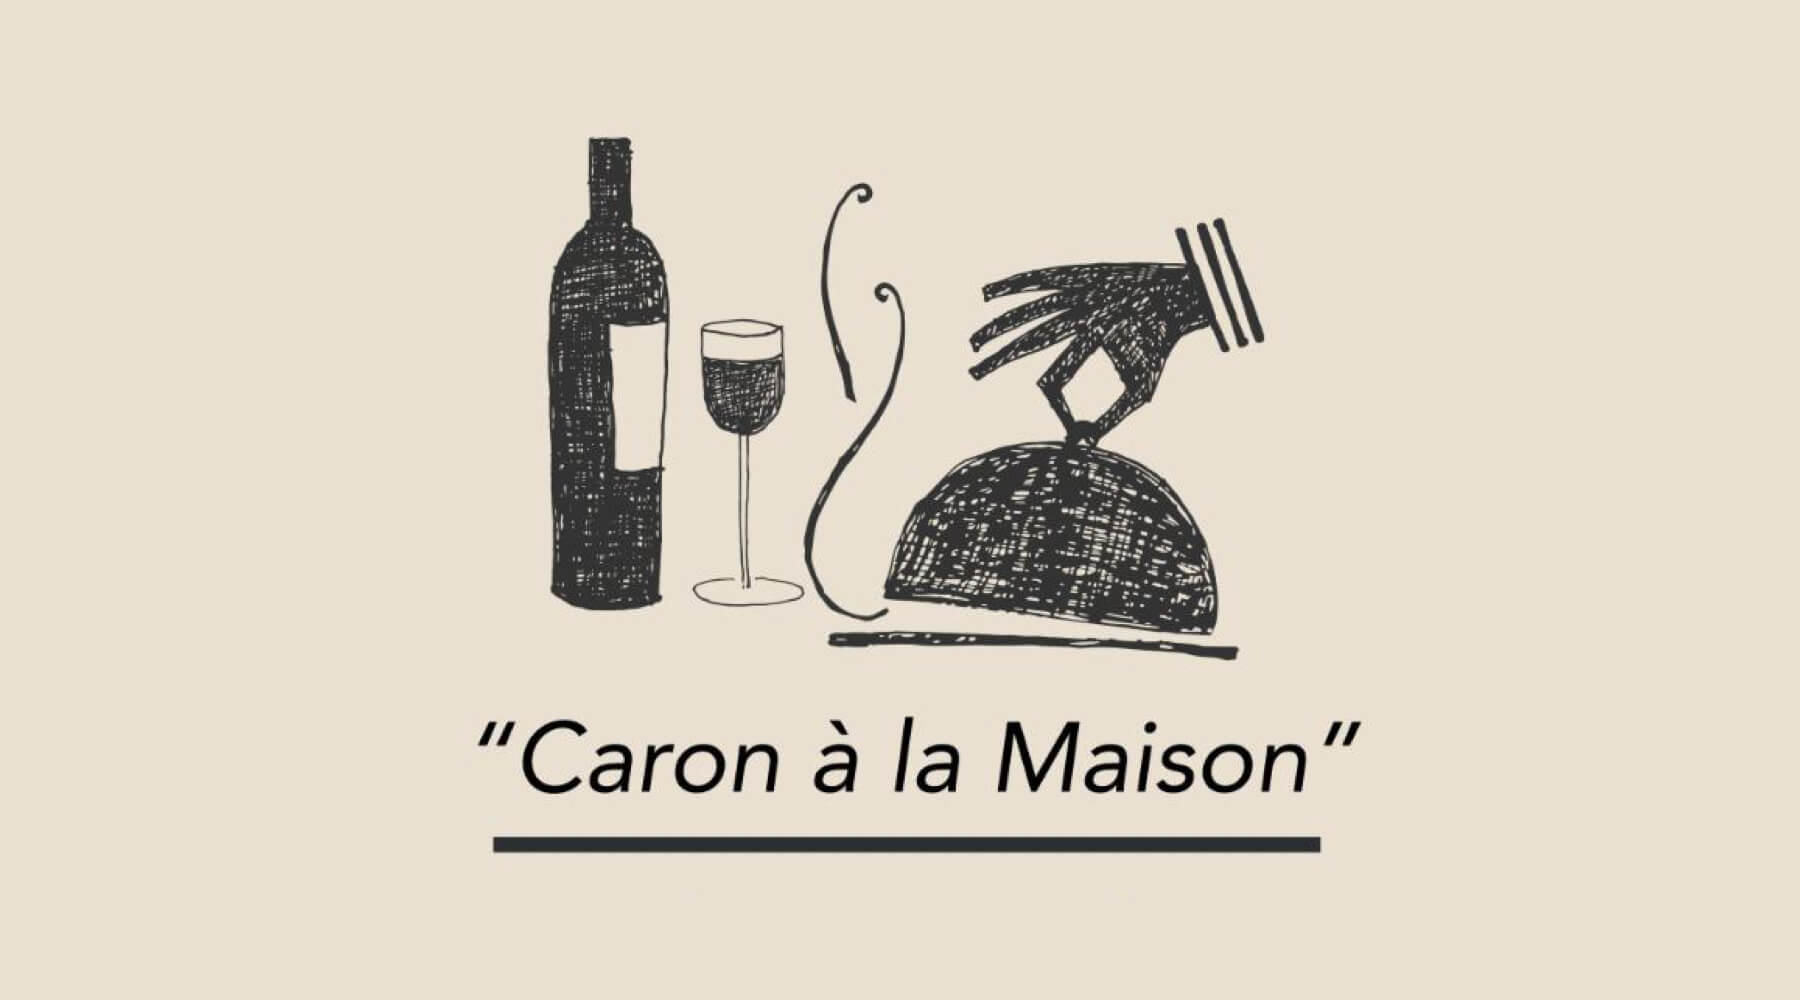 For Café Caron havde takeaway været utænkeligt. Nu da de blev nødt til at gøre noget, mærker de, at mange havde brug for den service.